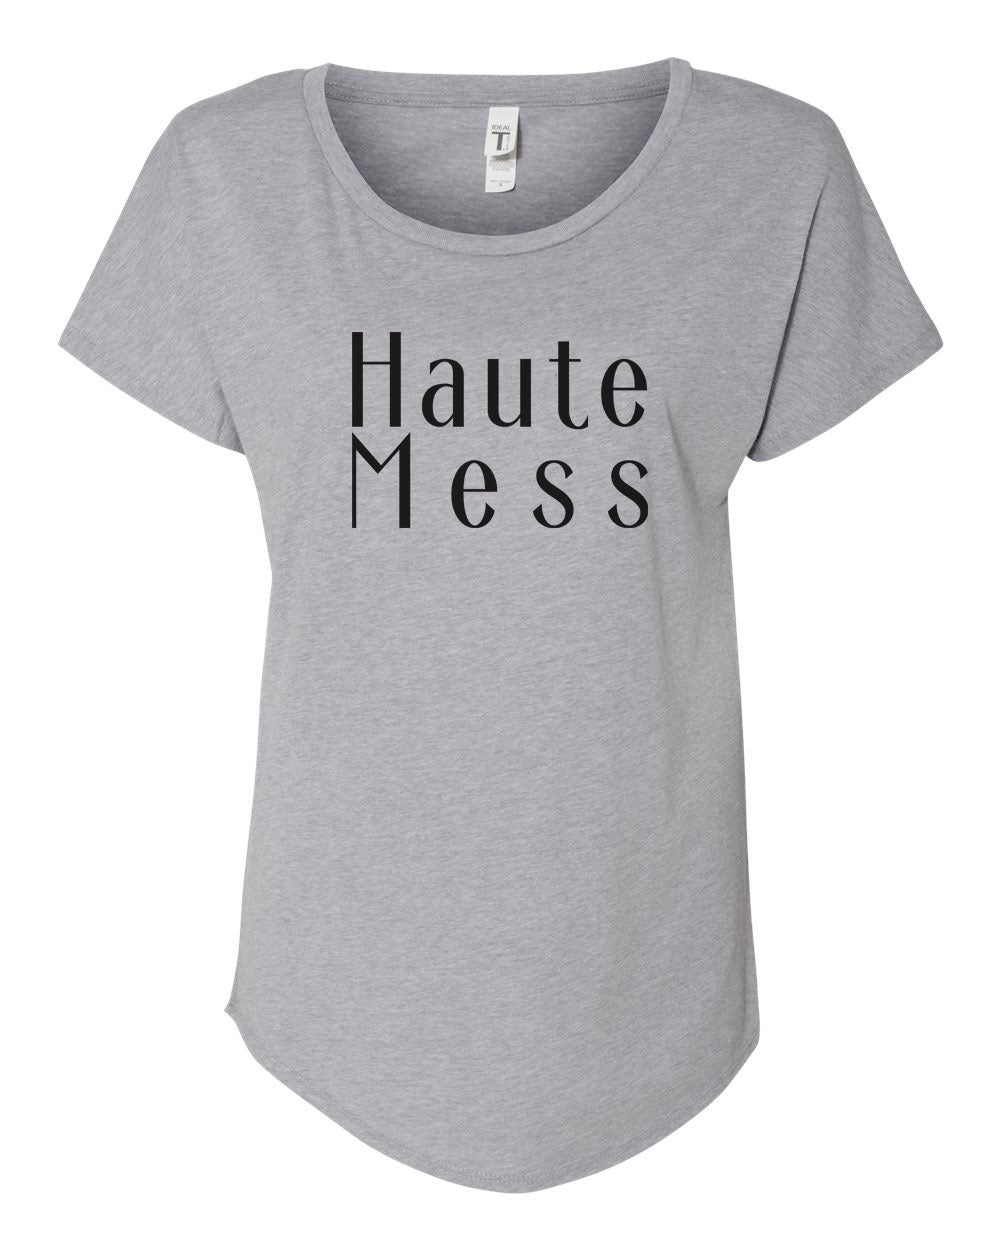 Haute Mess Ladies Tee Shirt - In Grey & White